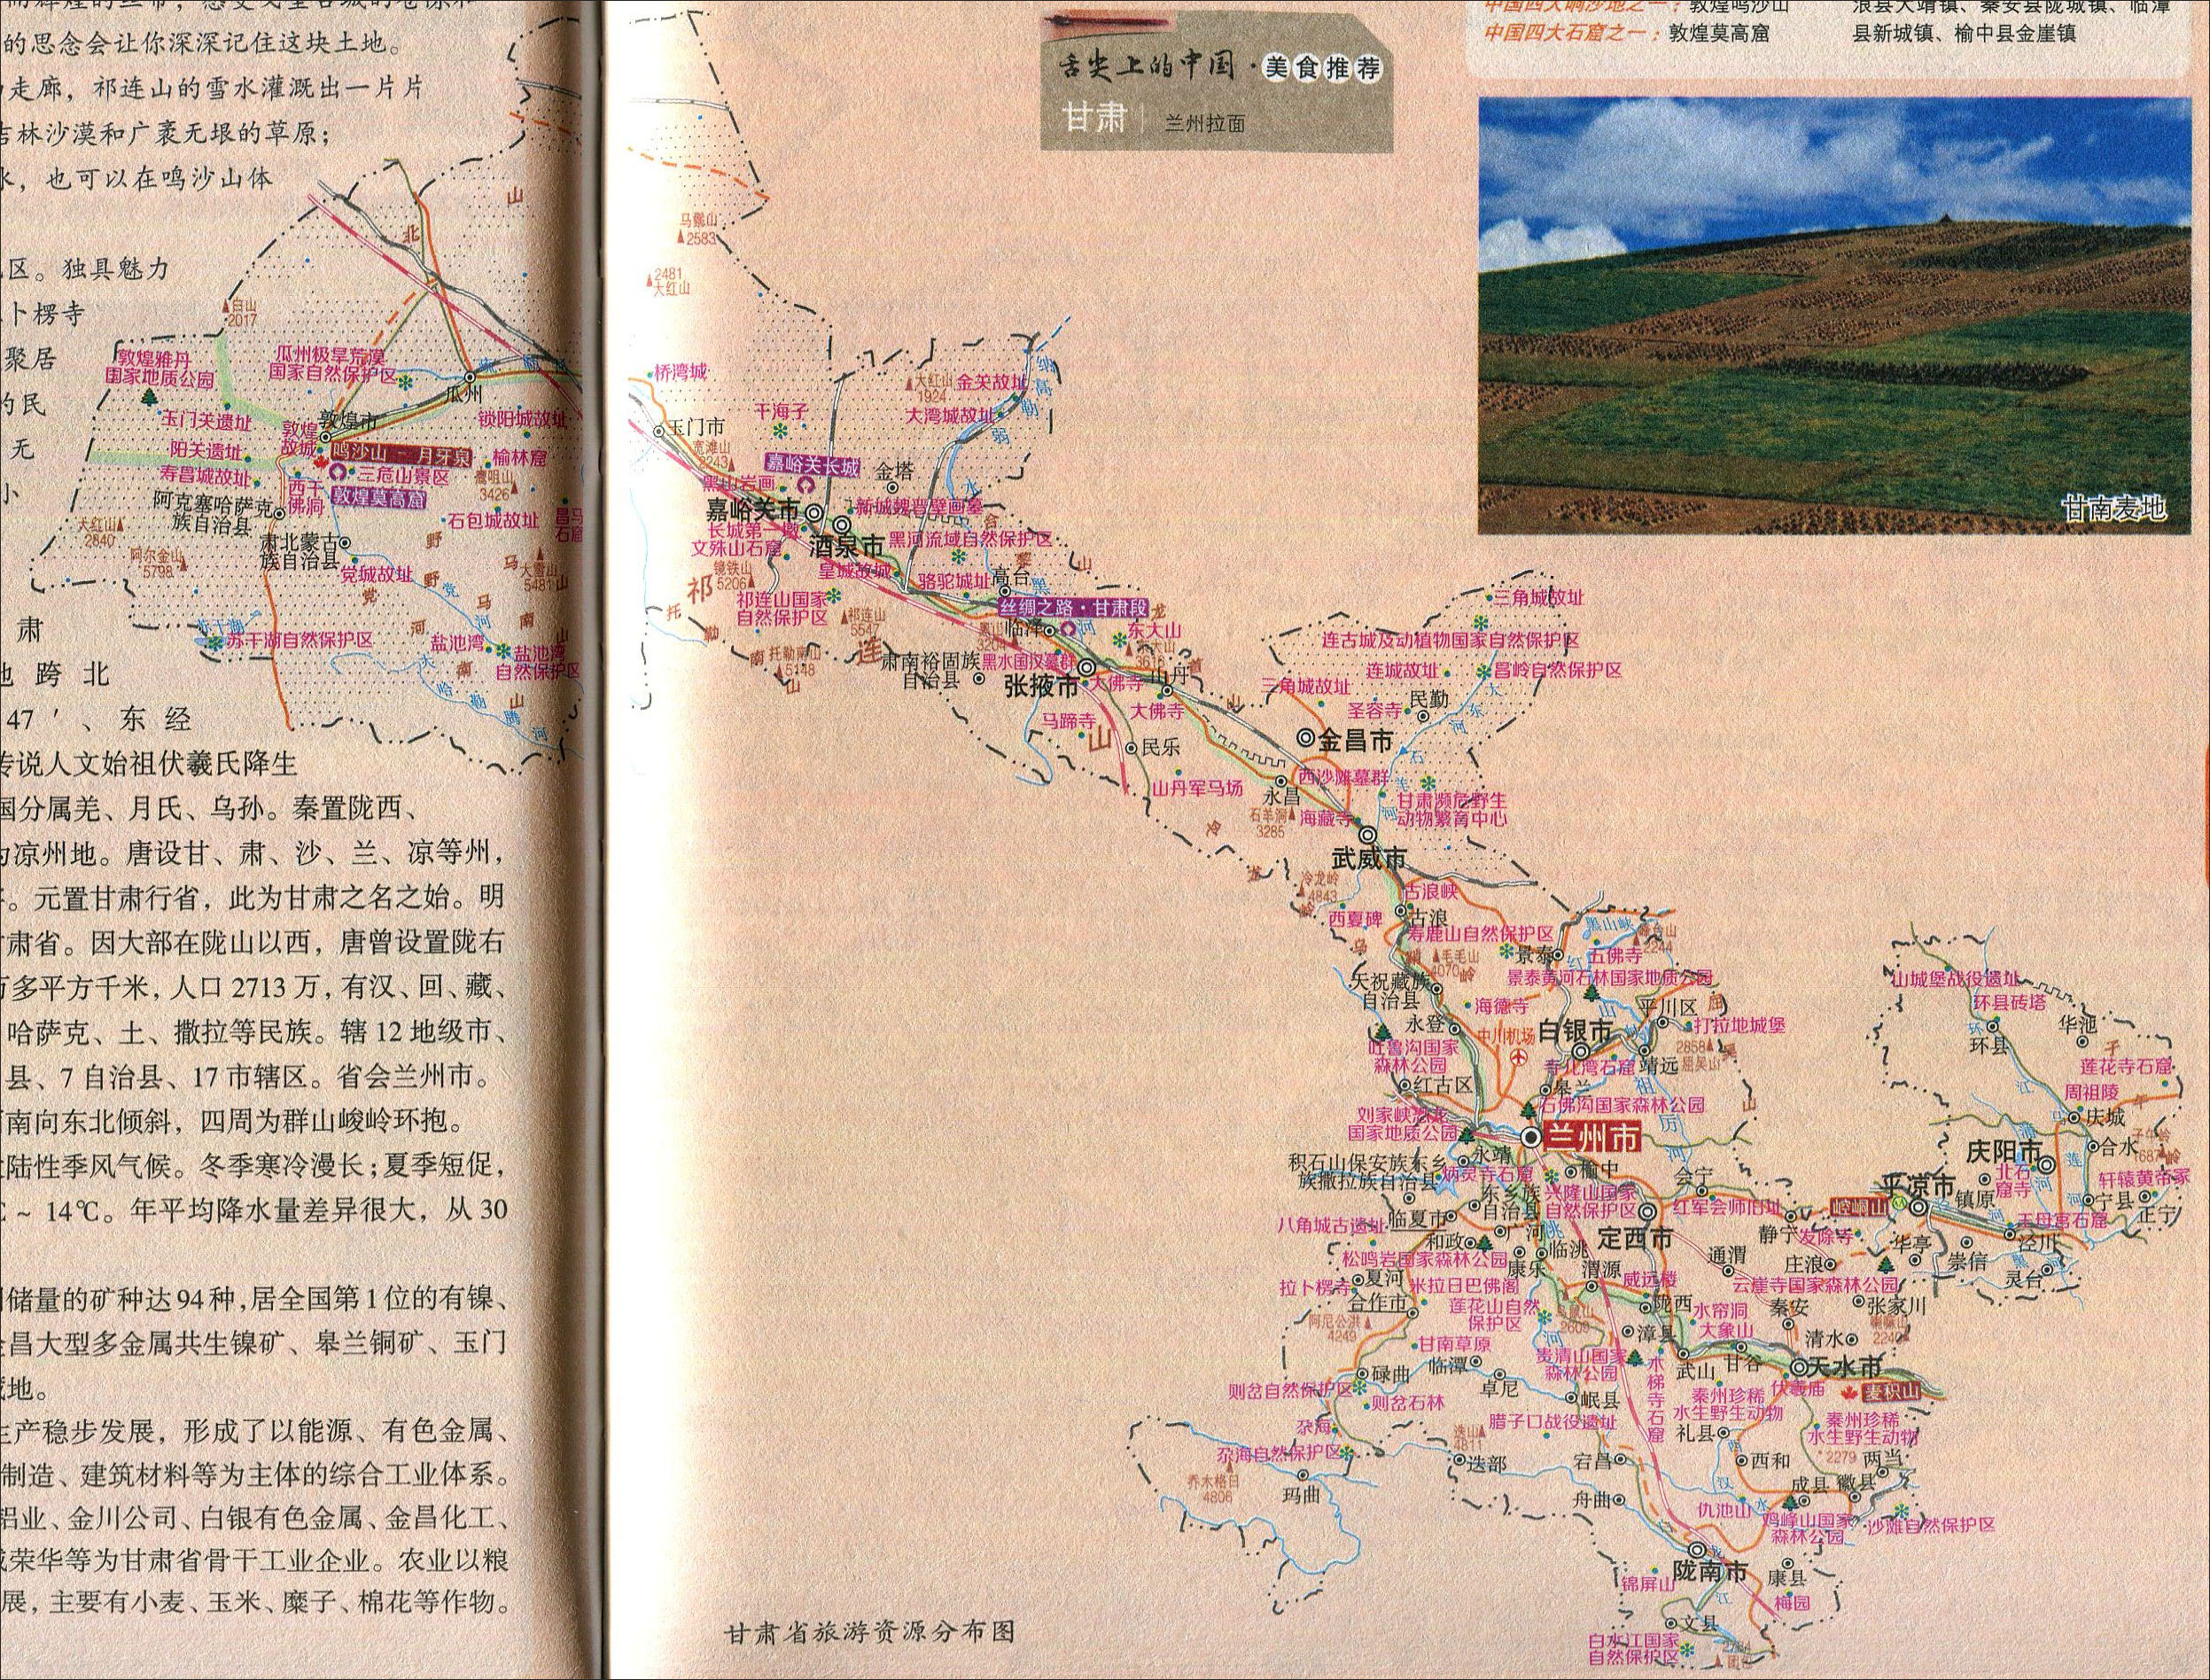 地图库 旅游地图 甘肃旅游 >> 甘肃省旅游资源分布图  景点导航:世界图片